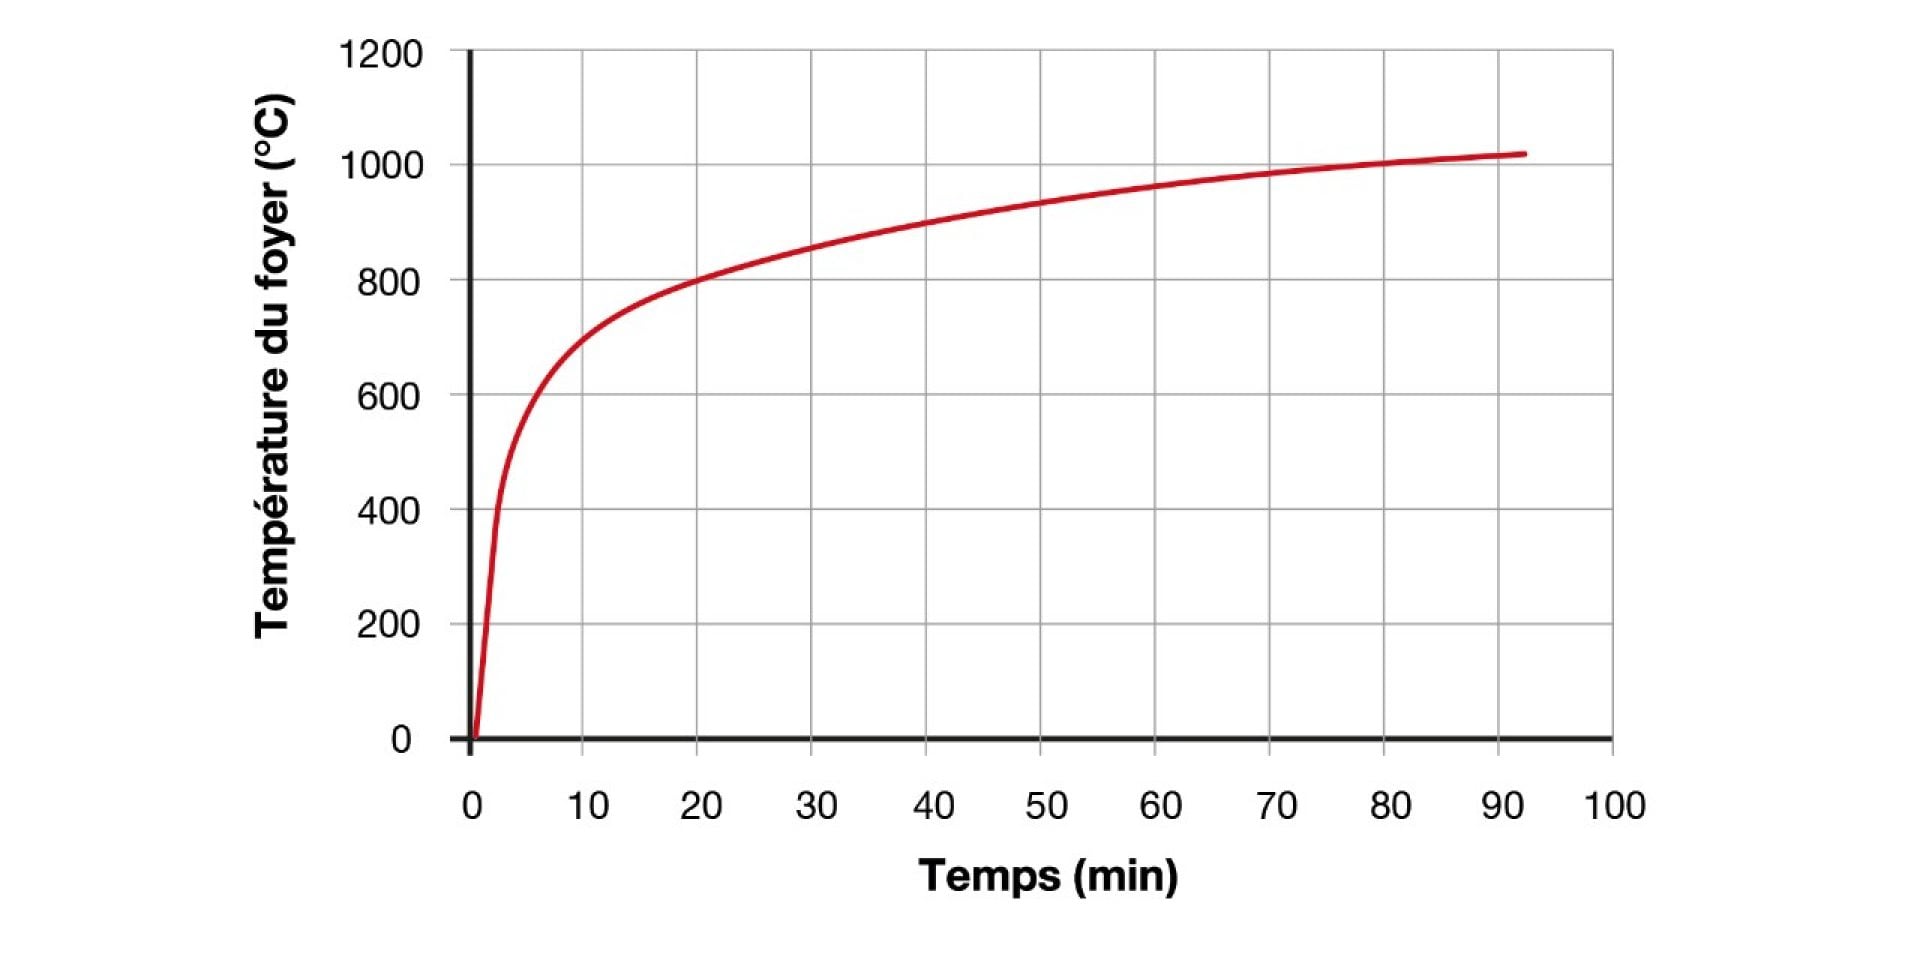 Hilti fire testing curve